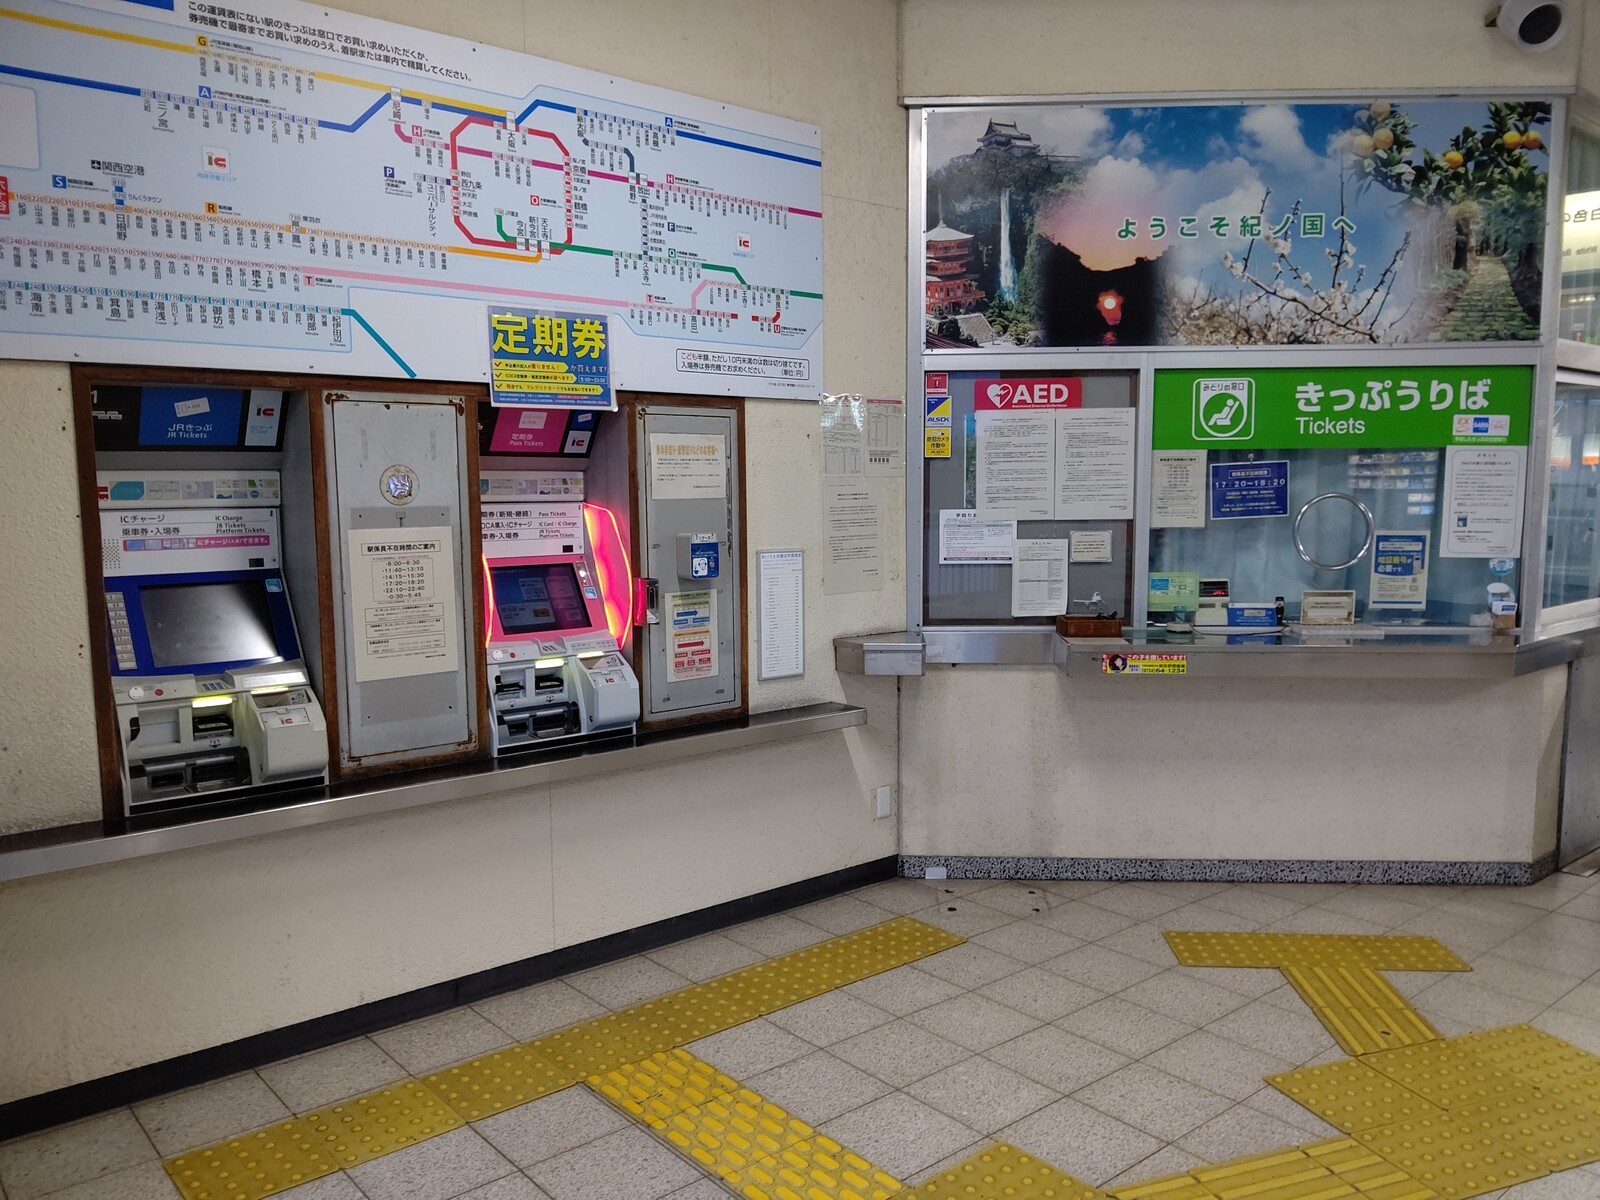 六十谷駅みどりの窓口は21年3月12日 金 限りで閉鎖 入場券 往復乗車券を購入してきました 阪和線の沿線から